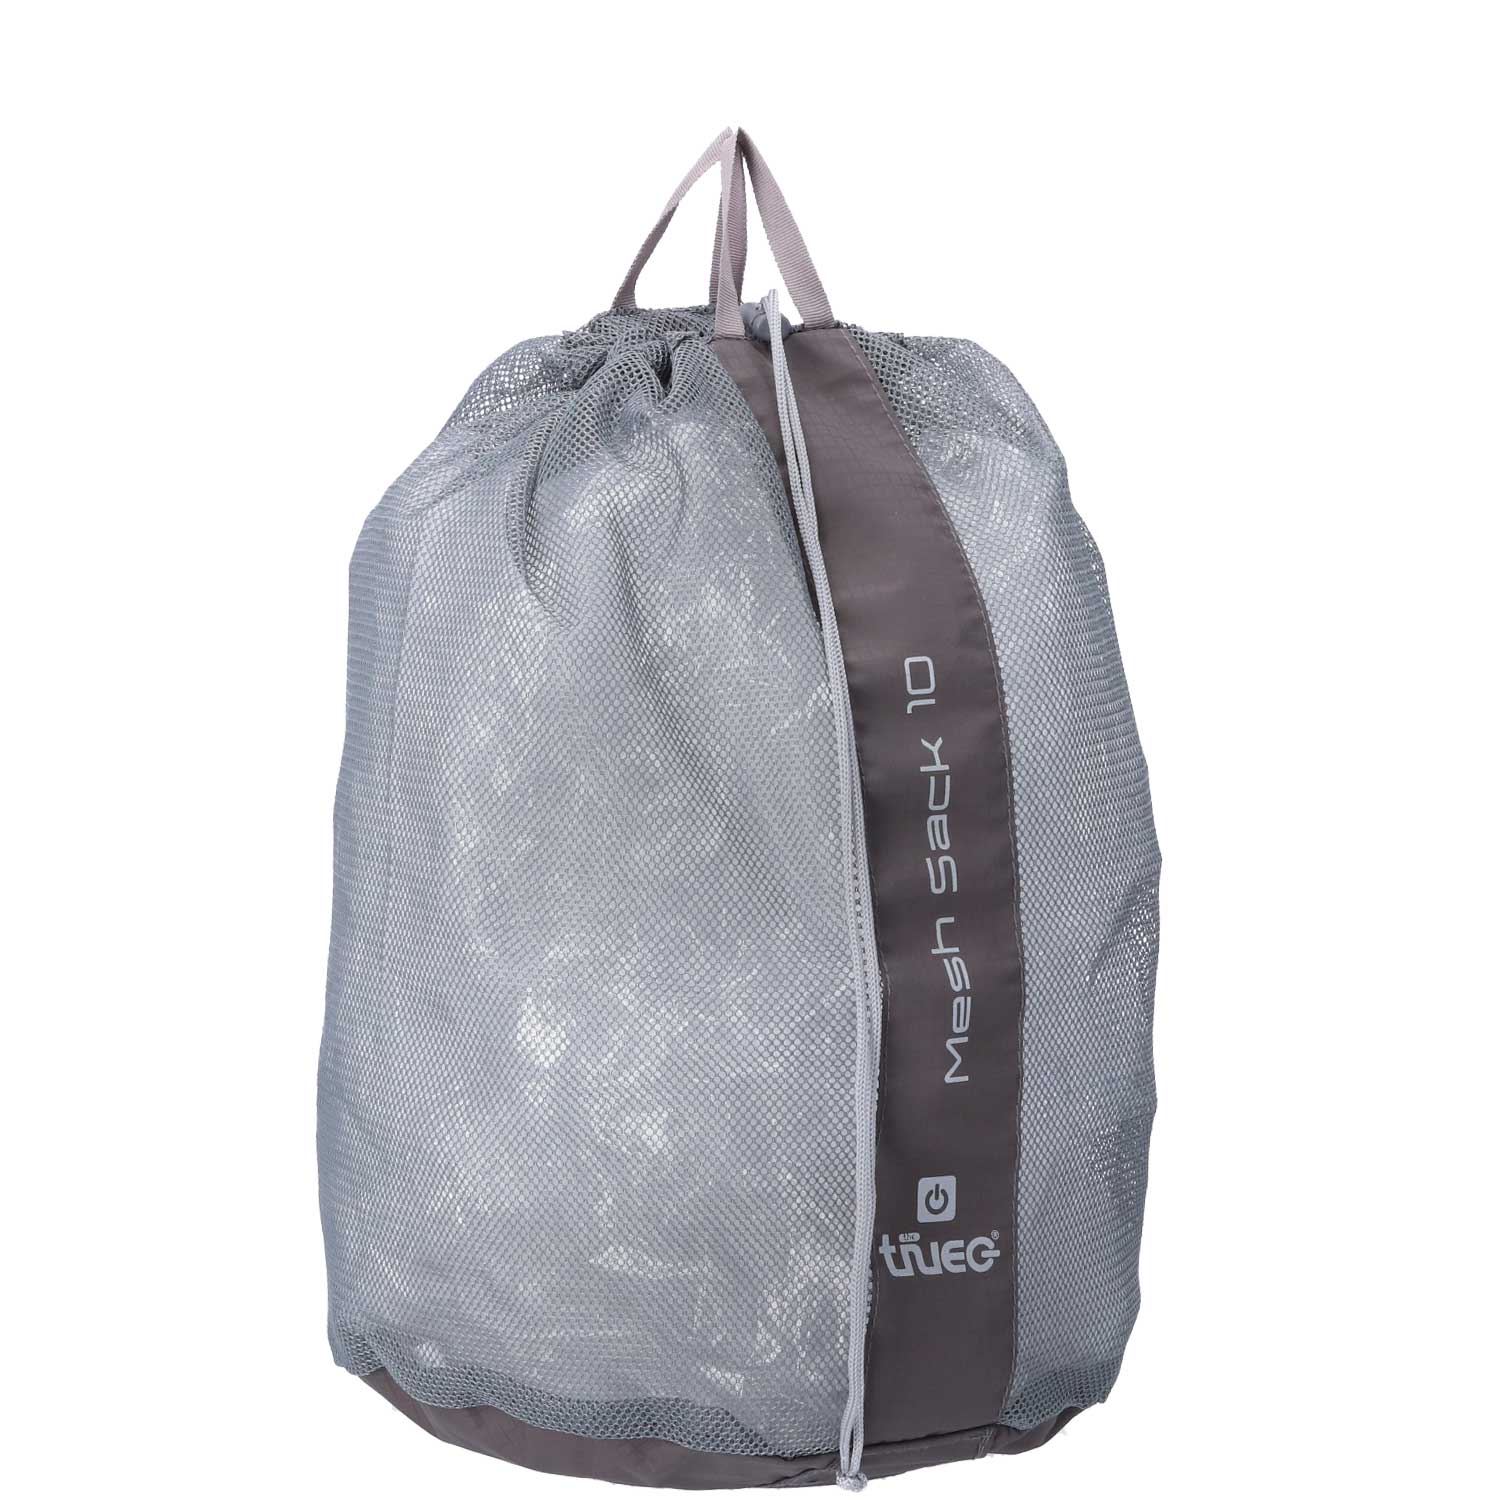 TheTrueC Travel Laundry Bag grau